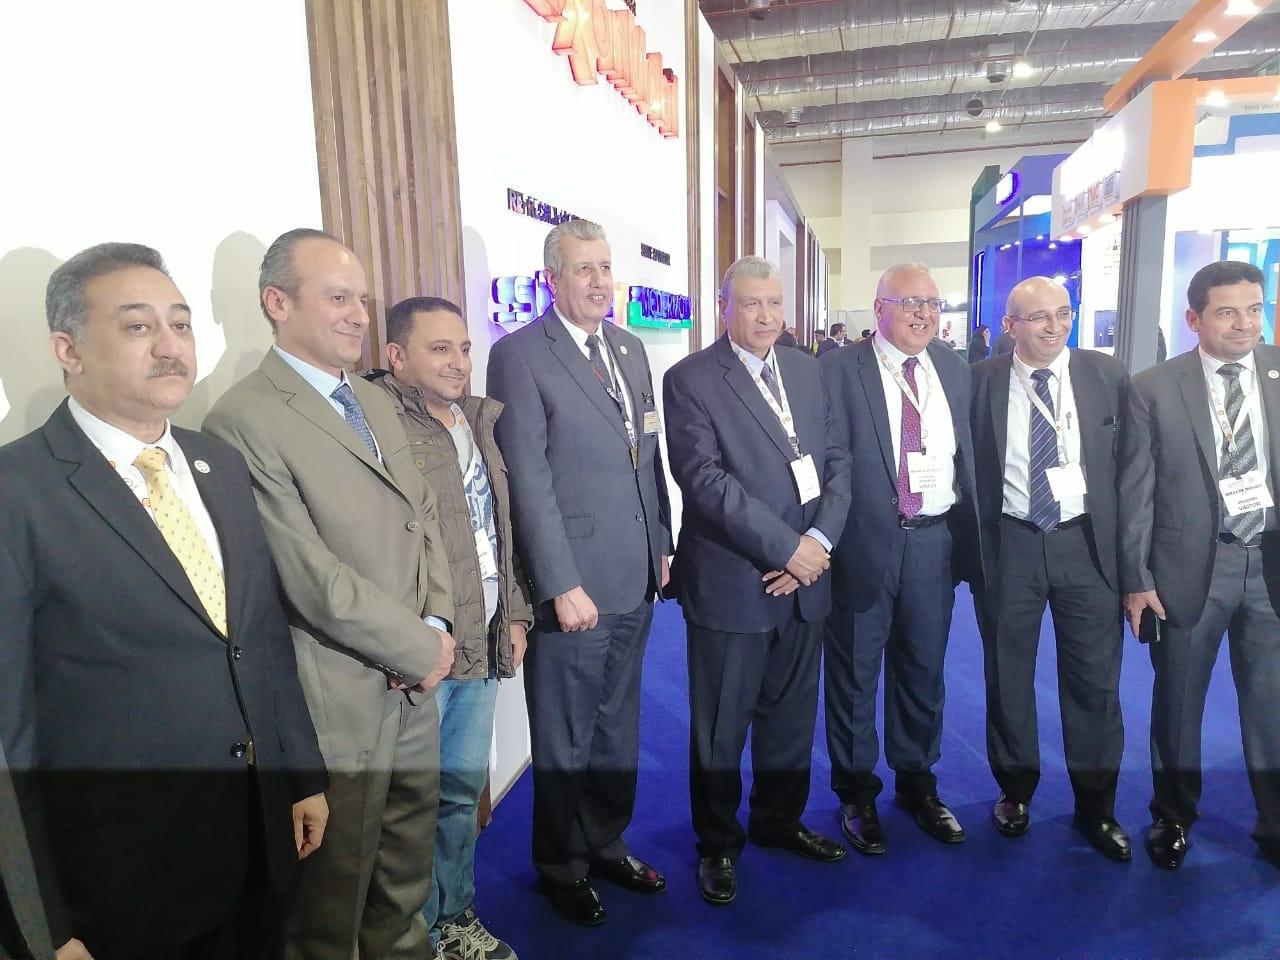   خلال معرض إيجبس للبترول «السهام البترولية» توقع بروتوكول تعاون مع شركة  H.H.p الفرنسية كوكيل لها بمصر